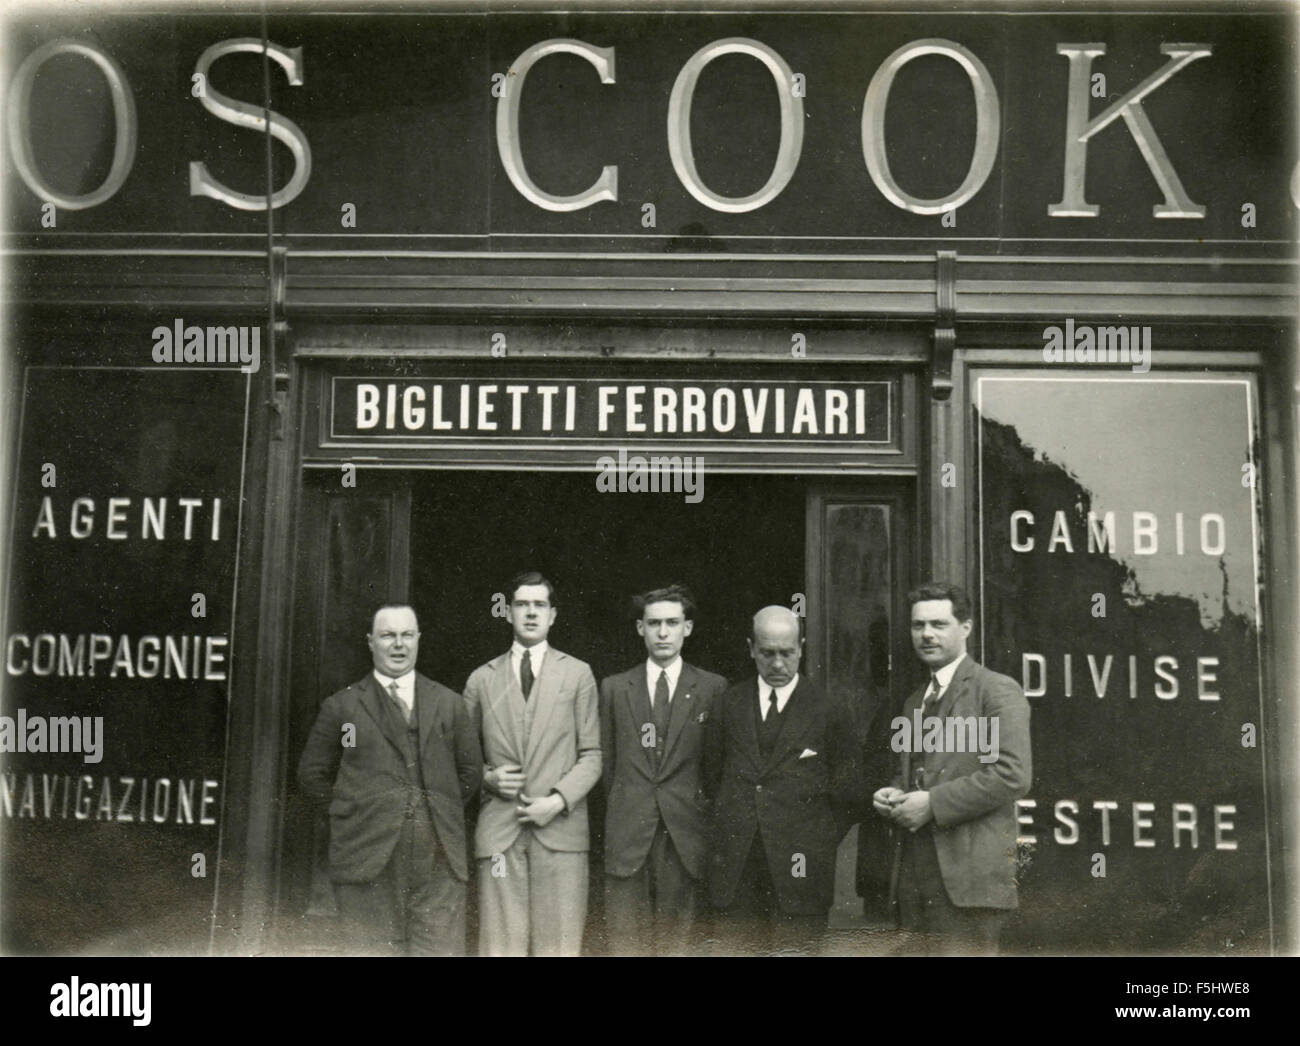 Los empleados de la agencia de viajes de Cook, Italia Foto de stock